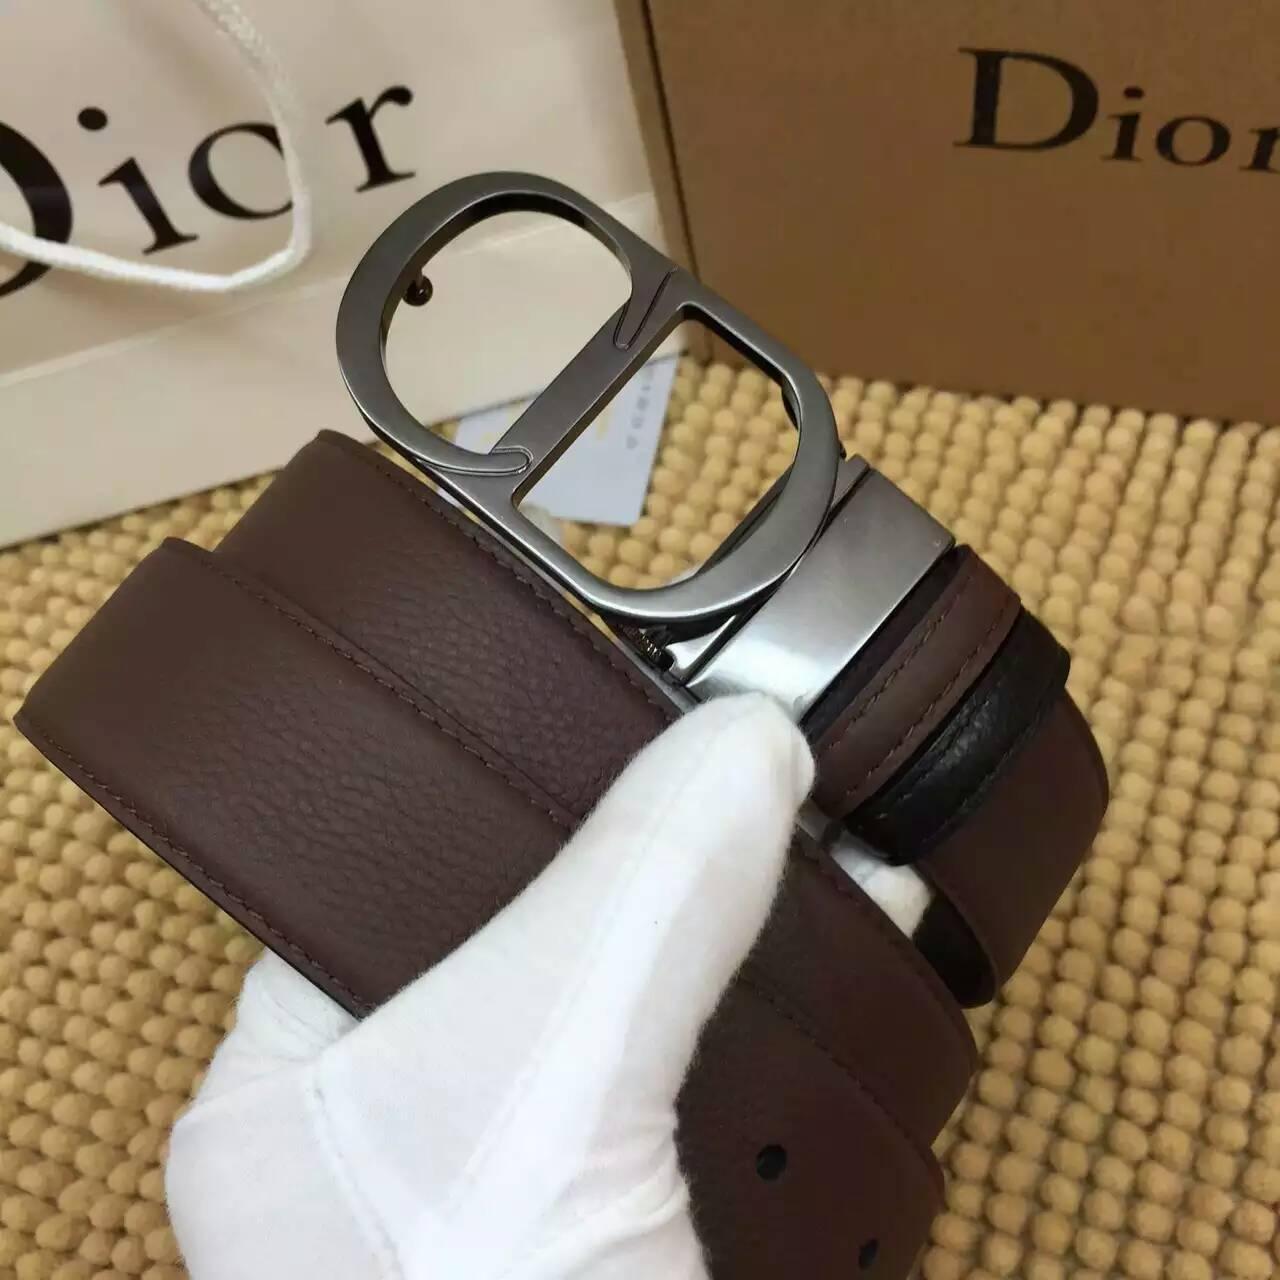 ディオールコピー ベルト Christian Dior 2016春夏新作 高品質 メンズ ベルト diorbelt160320-1